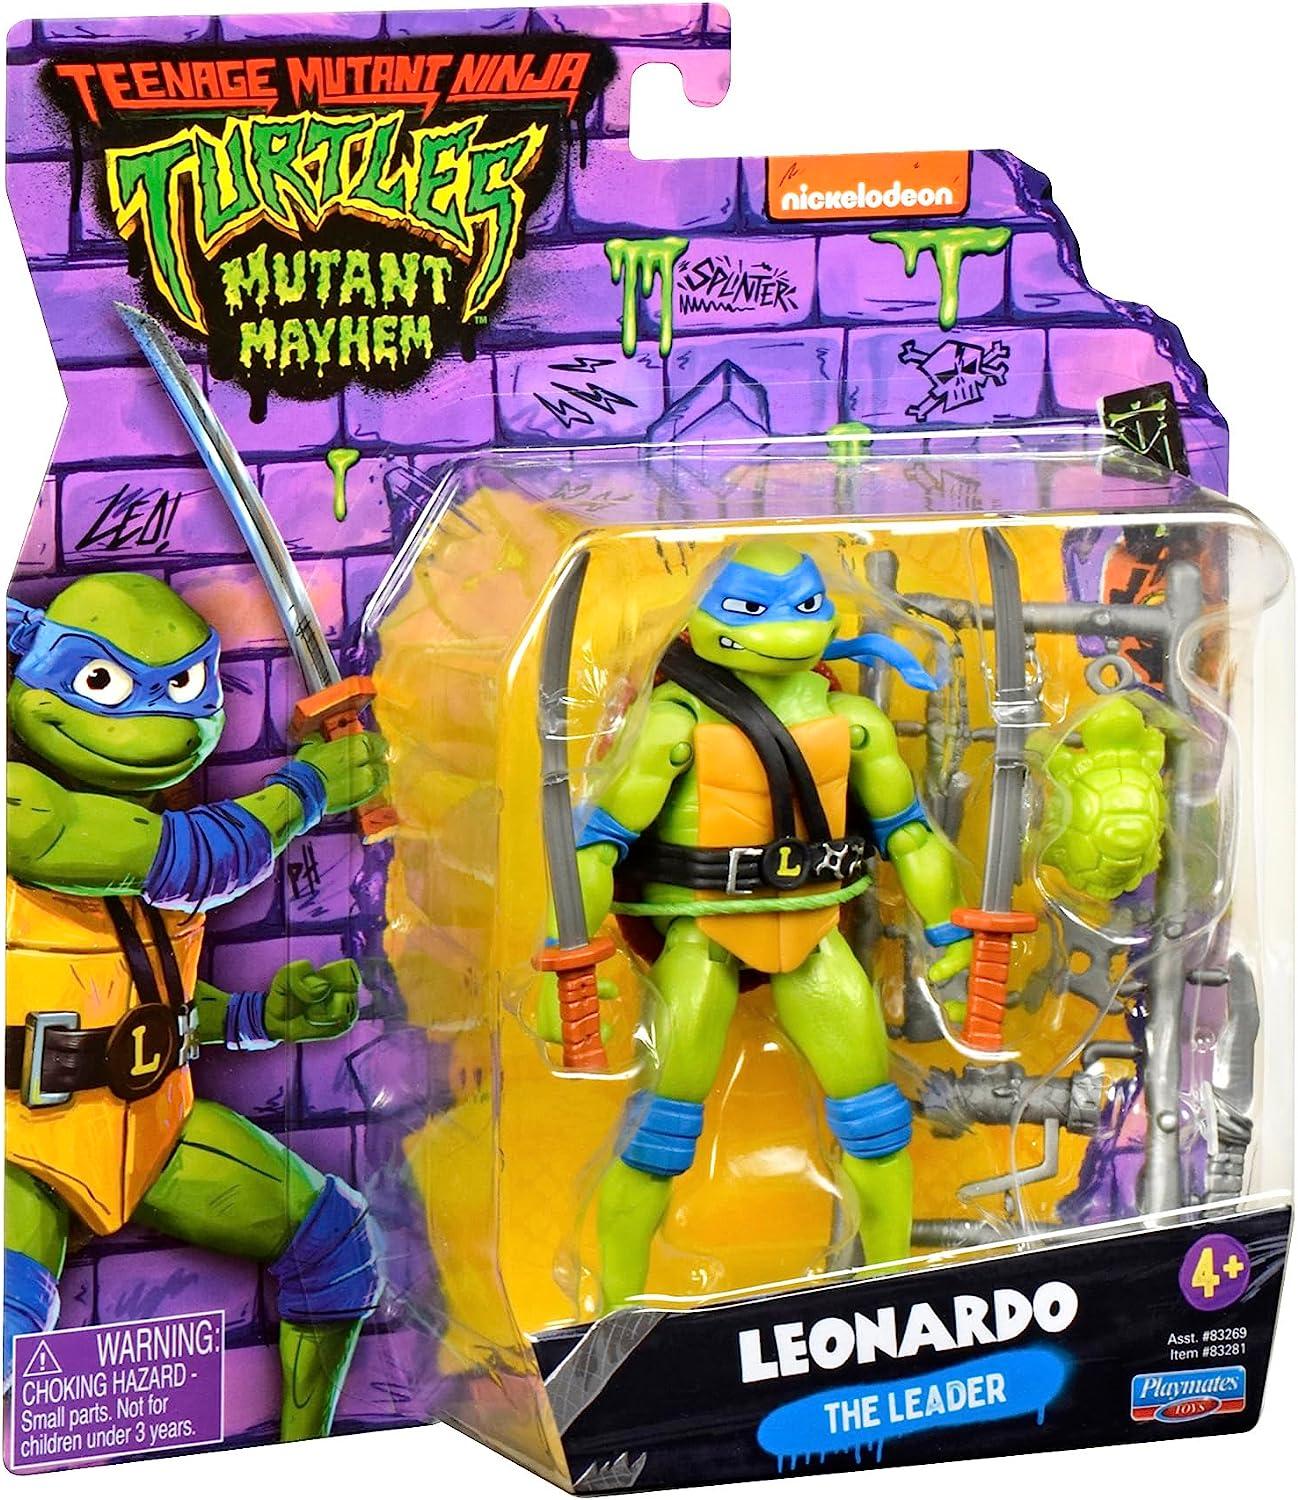 Teenage Mutant Ninja Turtles LEONARDO Mutant Mayhem